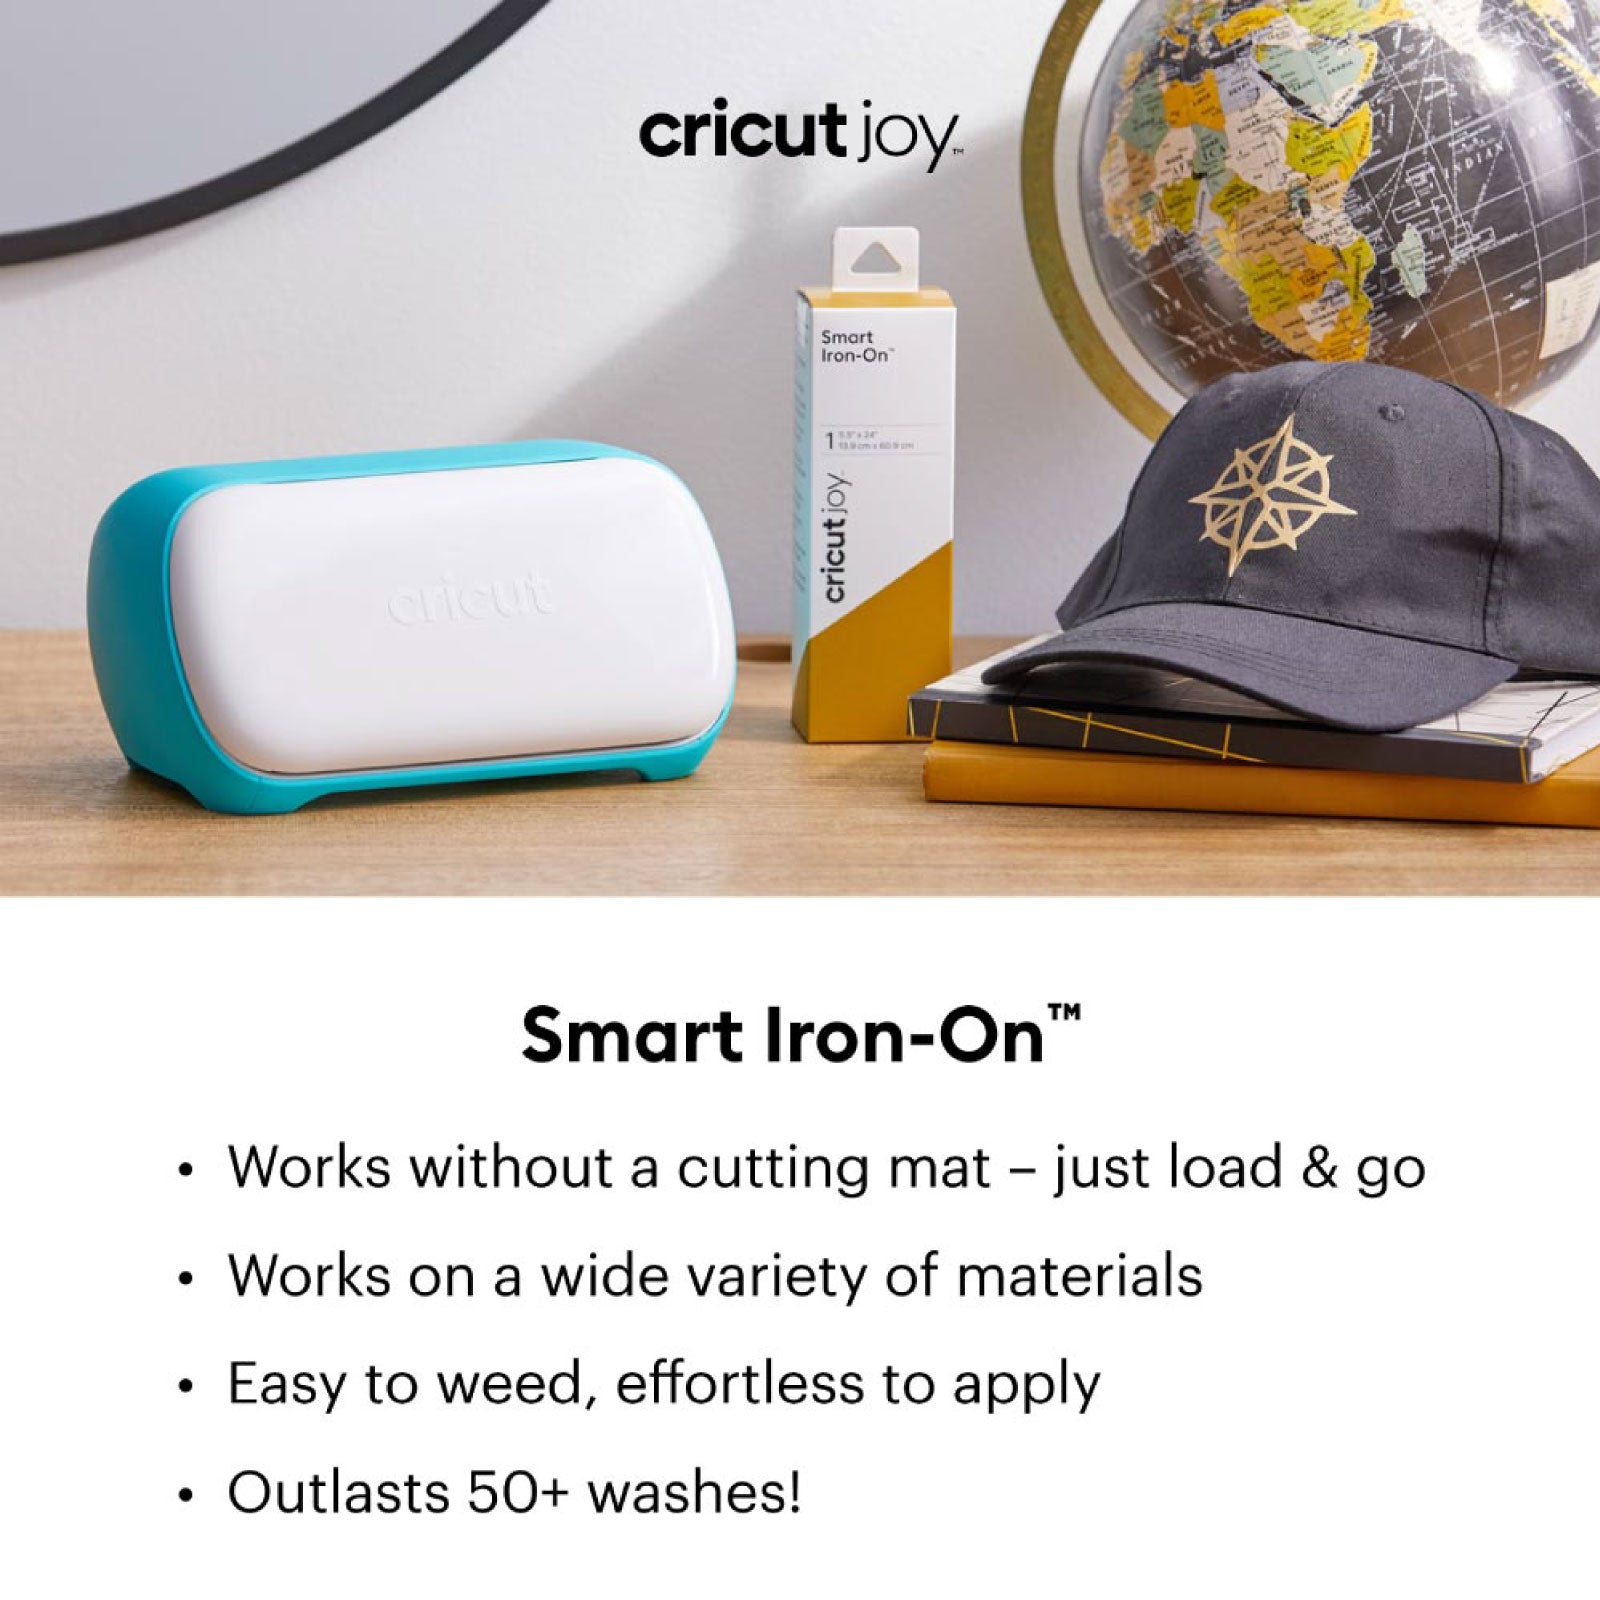 Cricut Joy Smart Iron On Kelly - Damaged Package